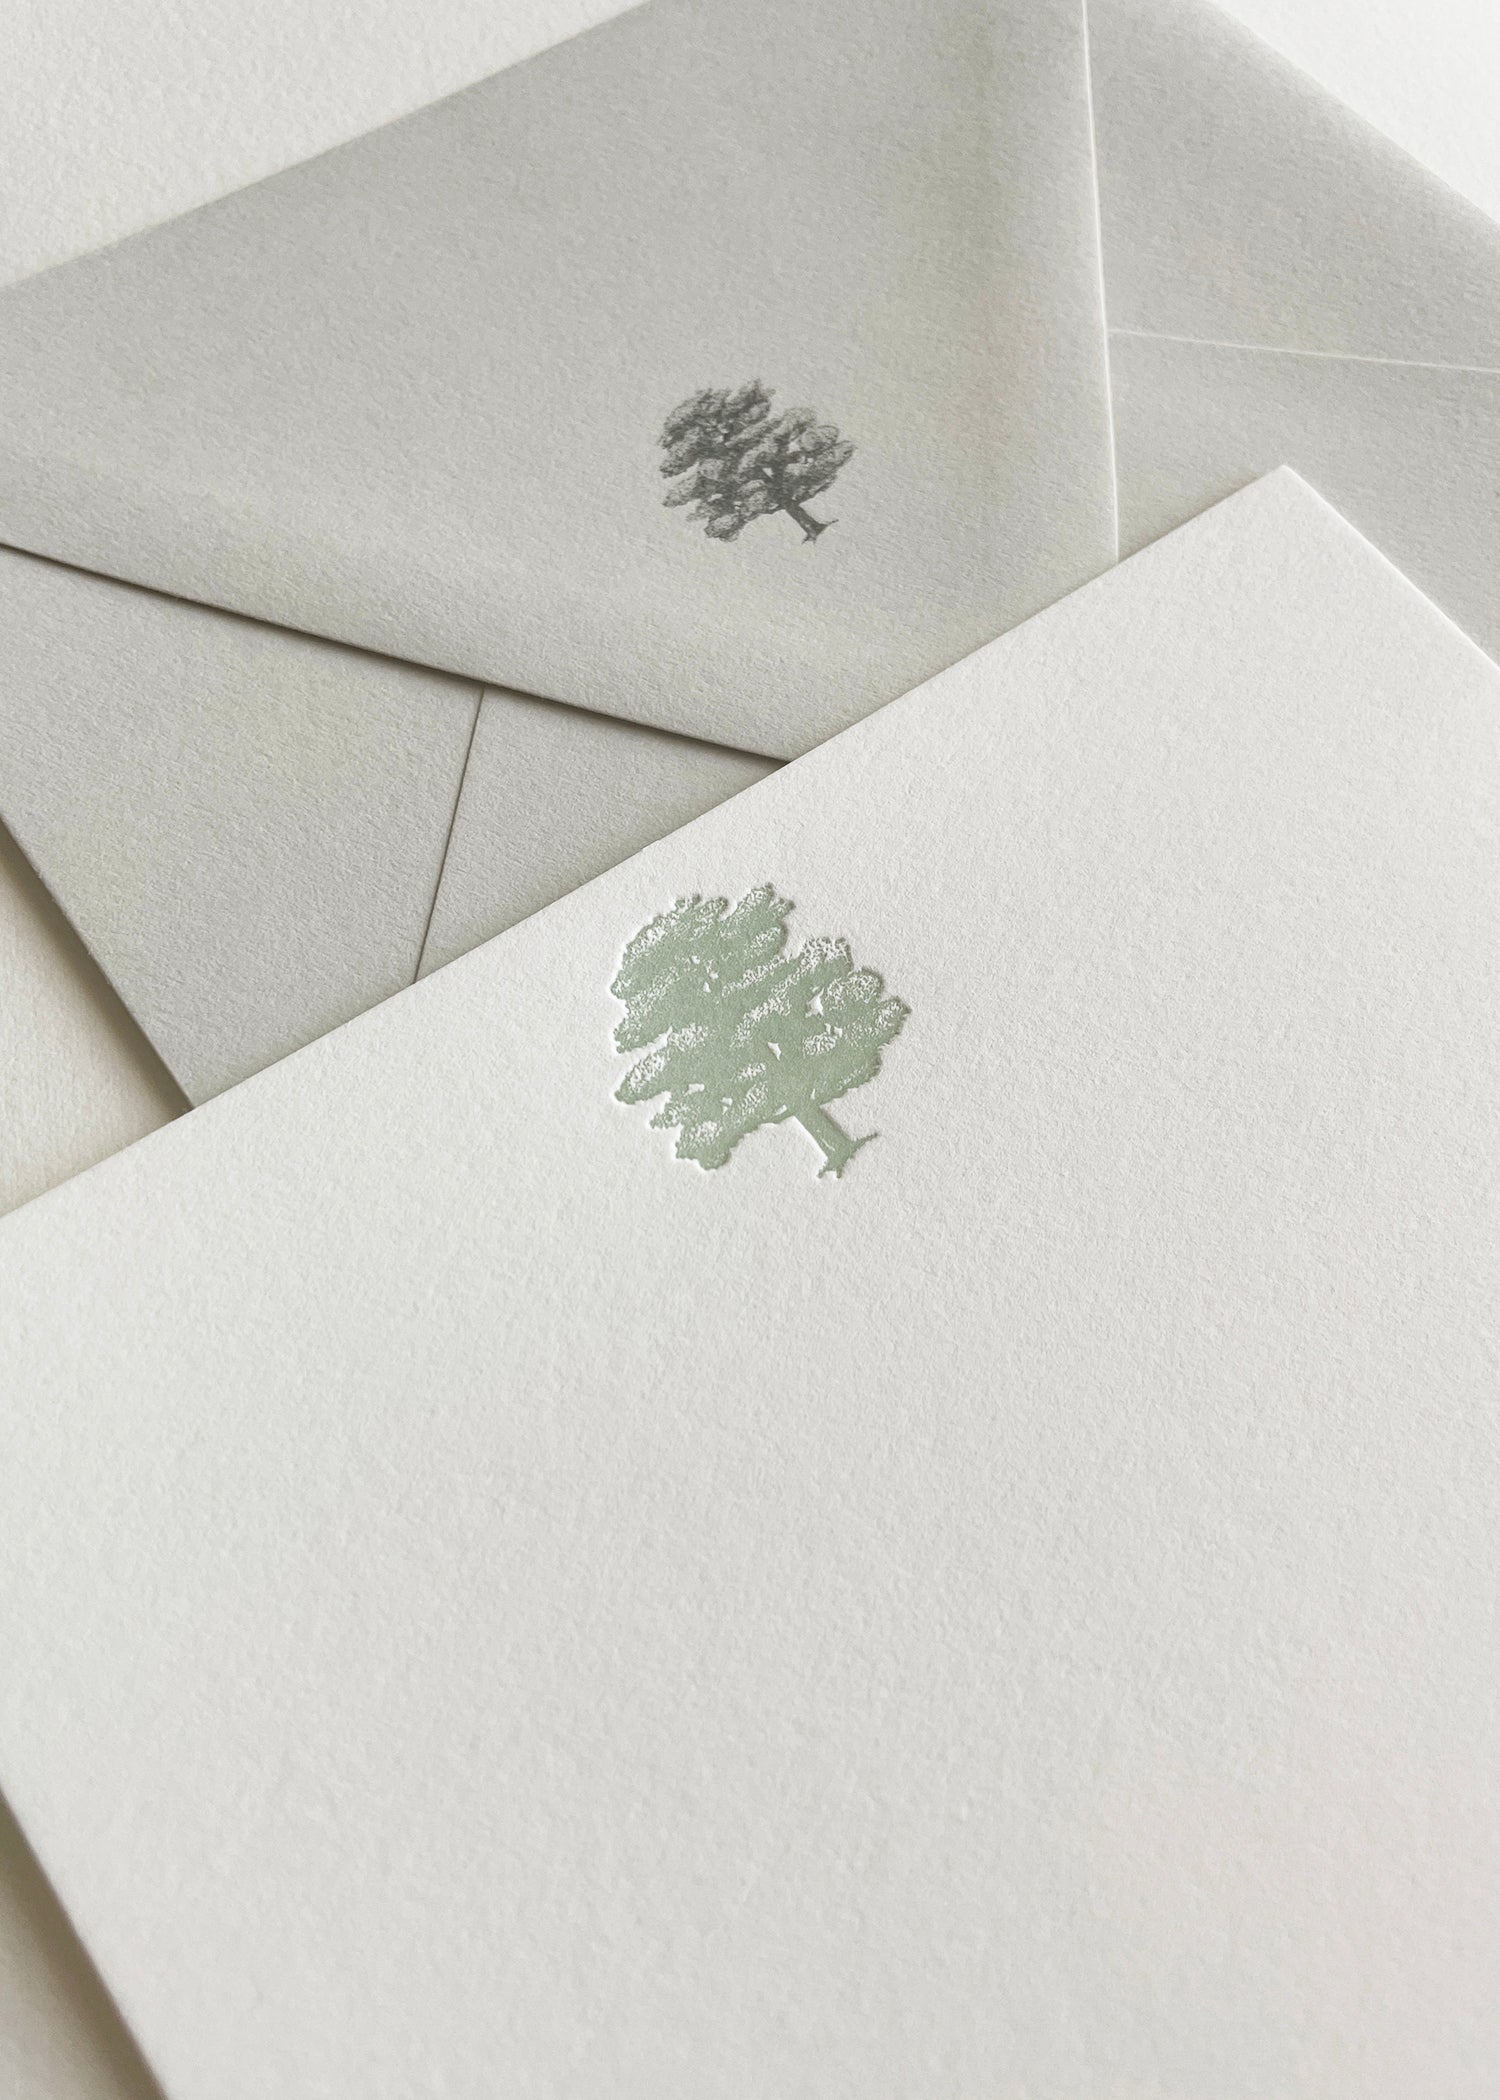 Letterpress flat note card with a green oak tree by Rust Belt Love